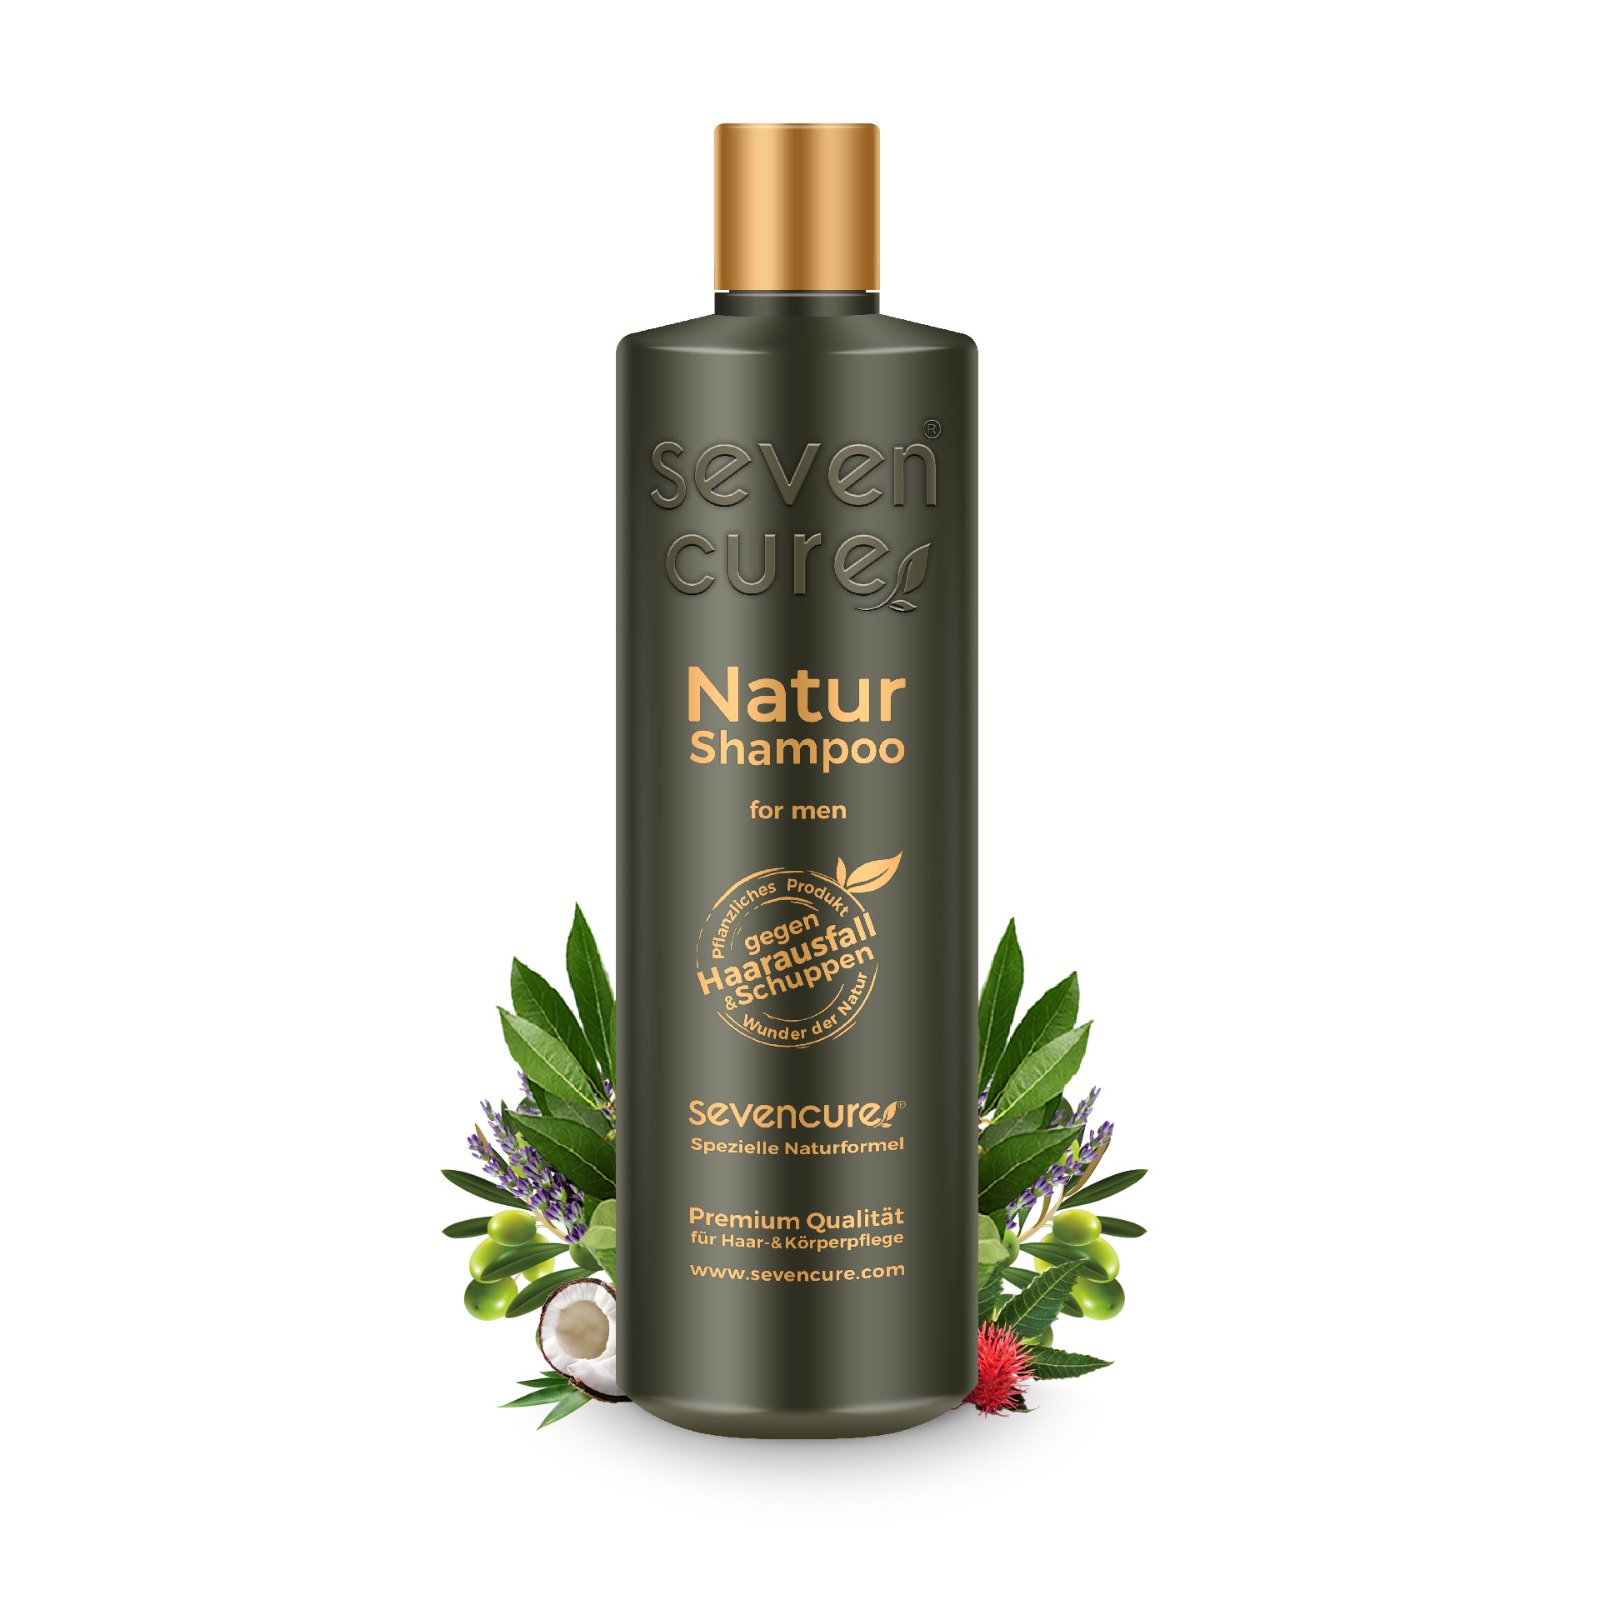 Sætte Alligevel søn Premium natural shampoo - for men - SevenCure - Natural Hair & Skin Care  Products